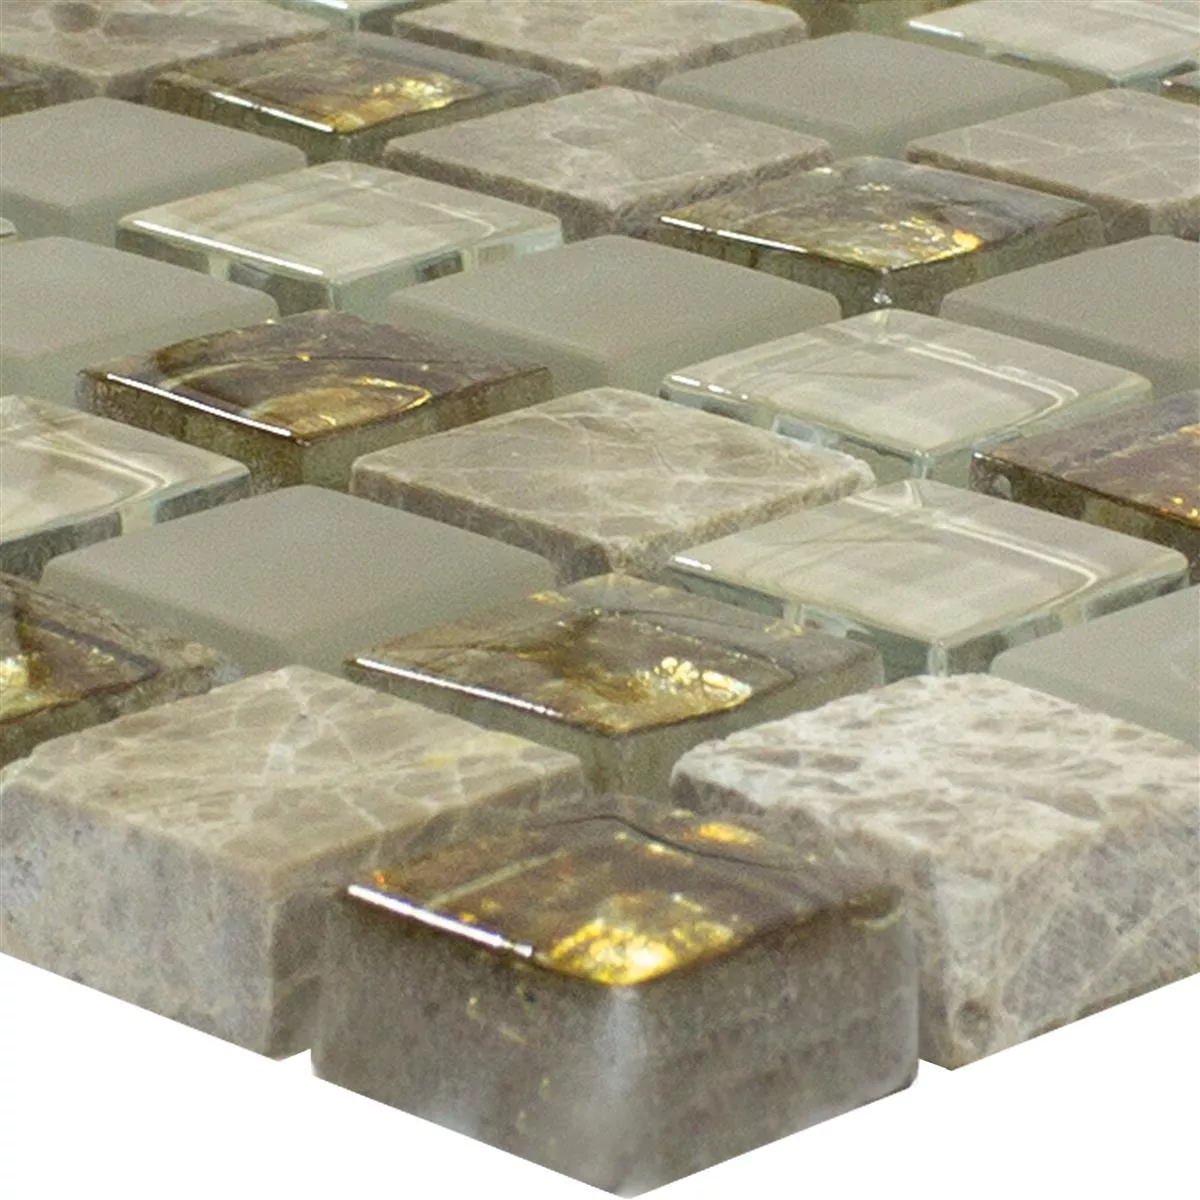 Campione Mosaico Di Vetro Piastrelle Lexington Vetro Mix di Materiali Marrone